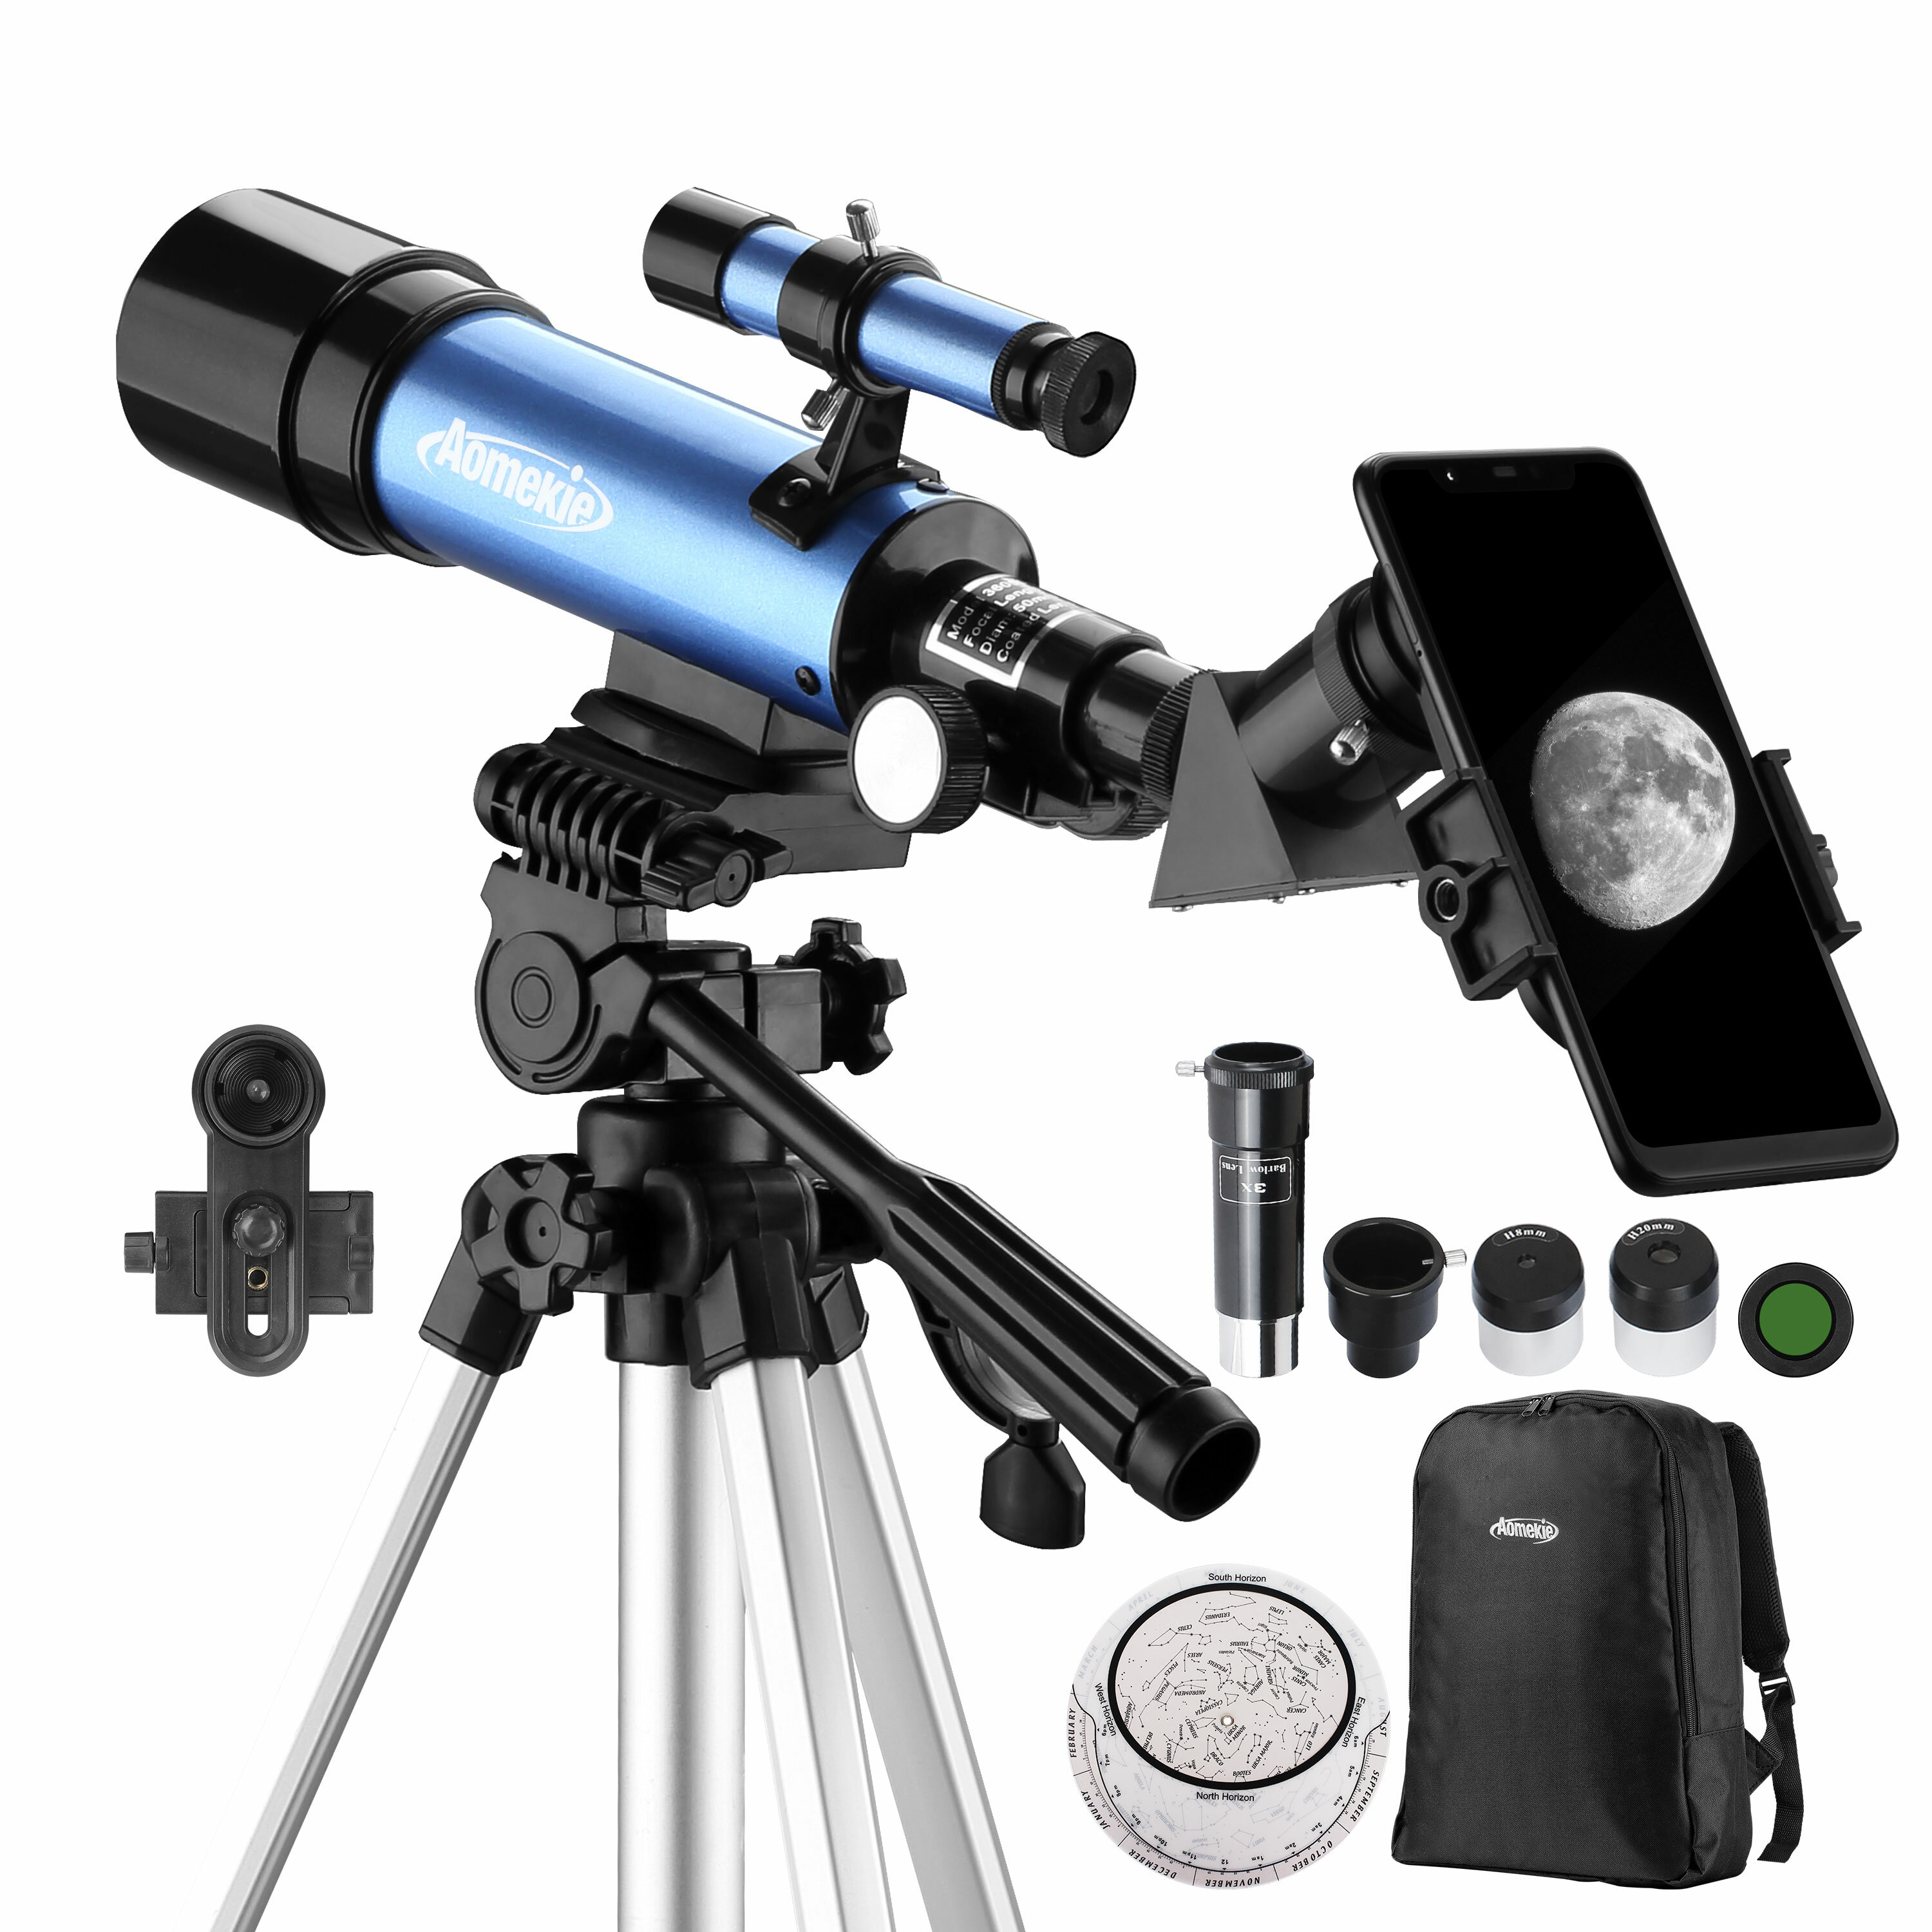 Telescopio astronomico AOMEKIE 18X-135X con apertura di 50 mm, tipo rifrattore, con adattatore per telefono e treppiede regolabile per principianti in astronomia.